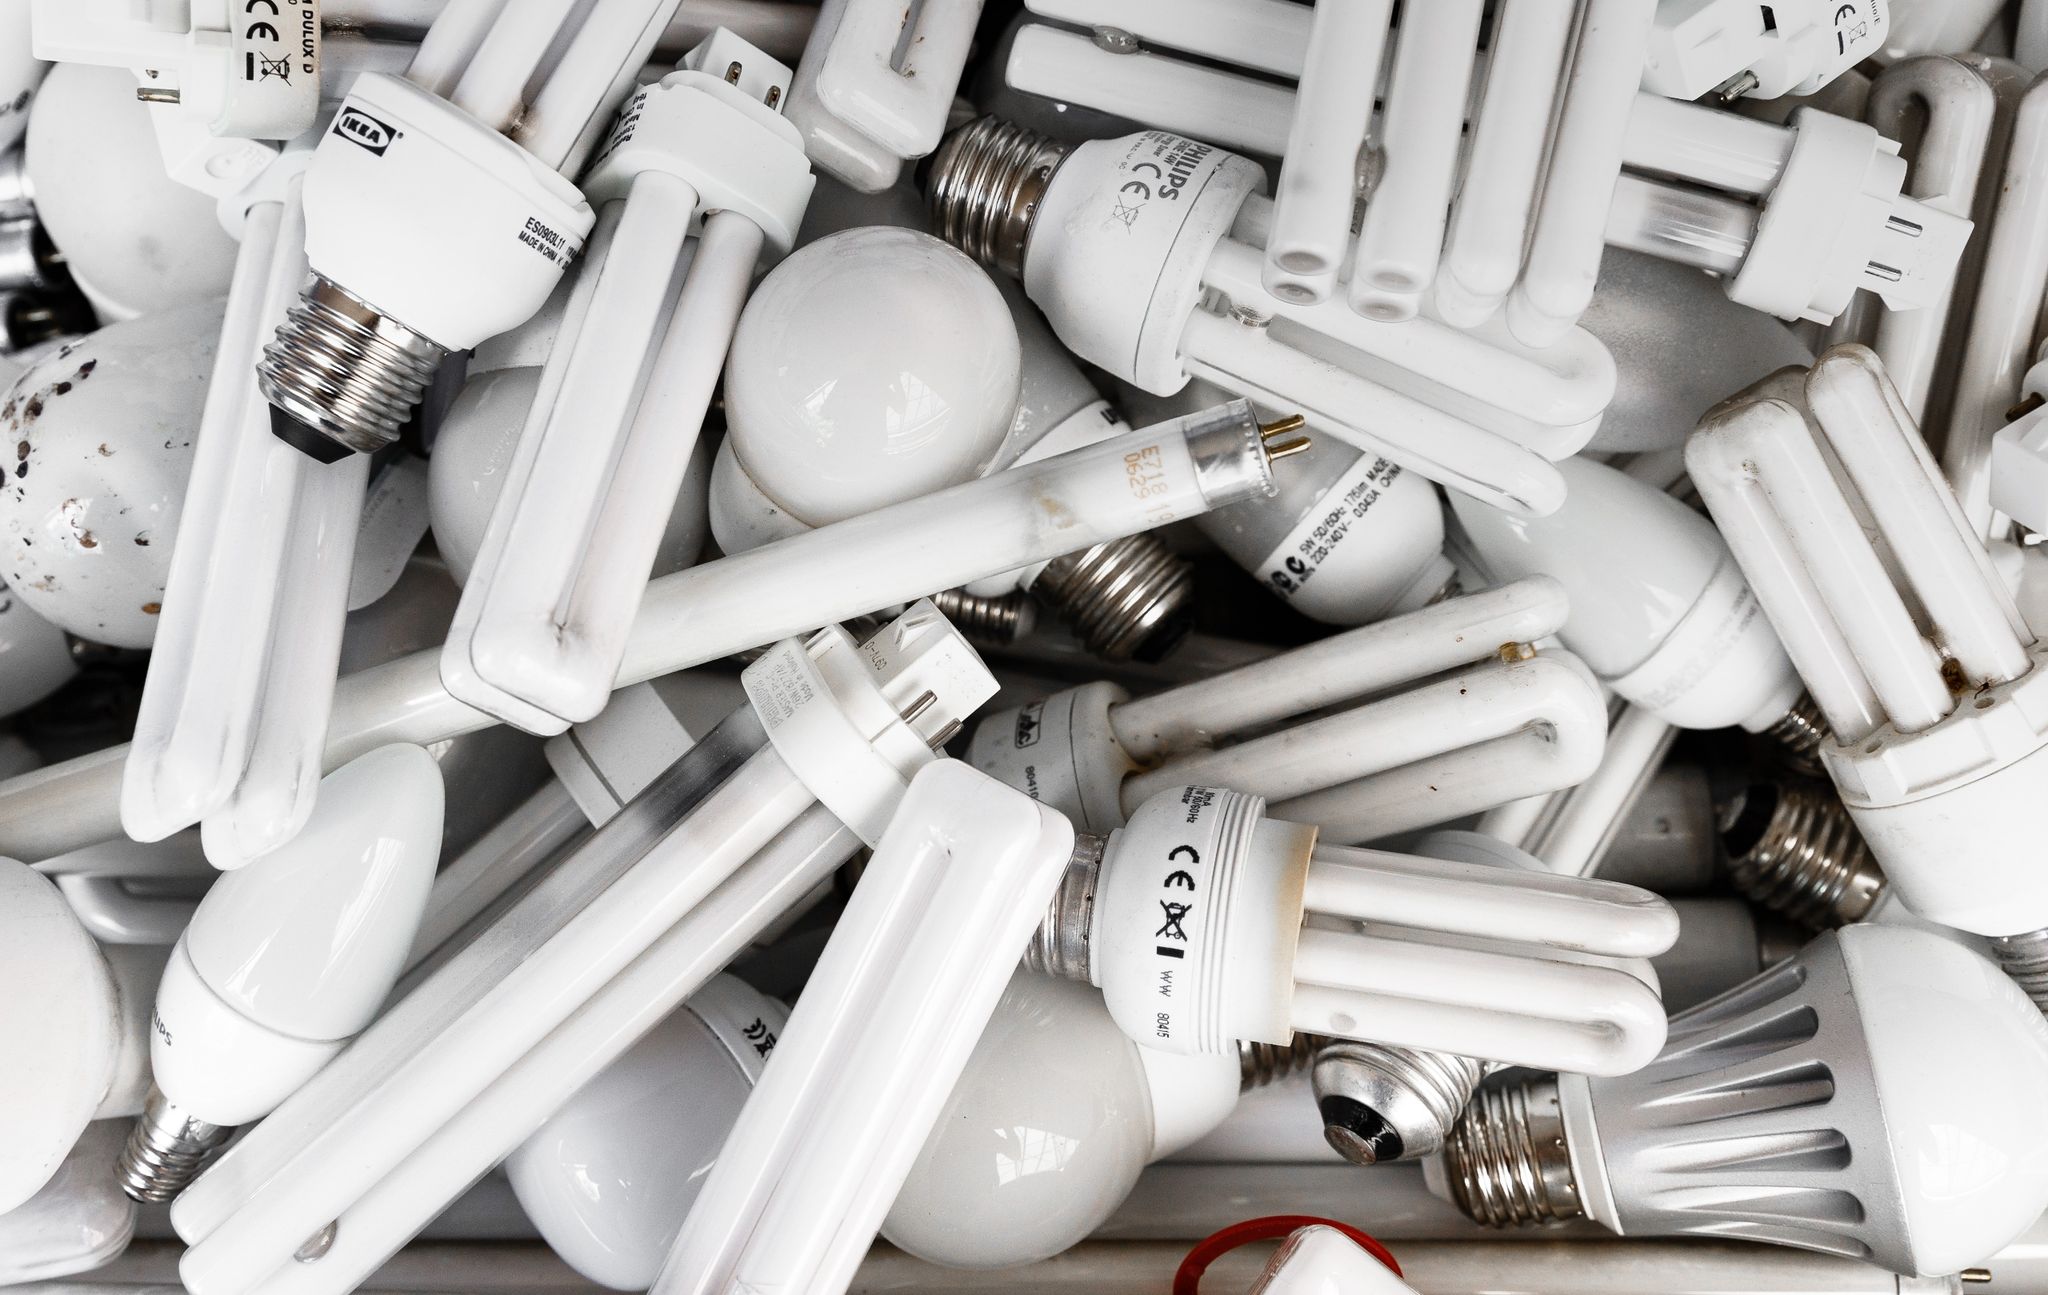 Werden bald nicht mehr verkauft, haben aber nichts im Hausmüll zu suchen: Energiesparlampen ud Leuchtstoffröhren, die man austauscht, gehören in den Elektroschrott.